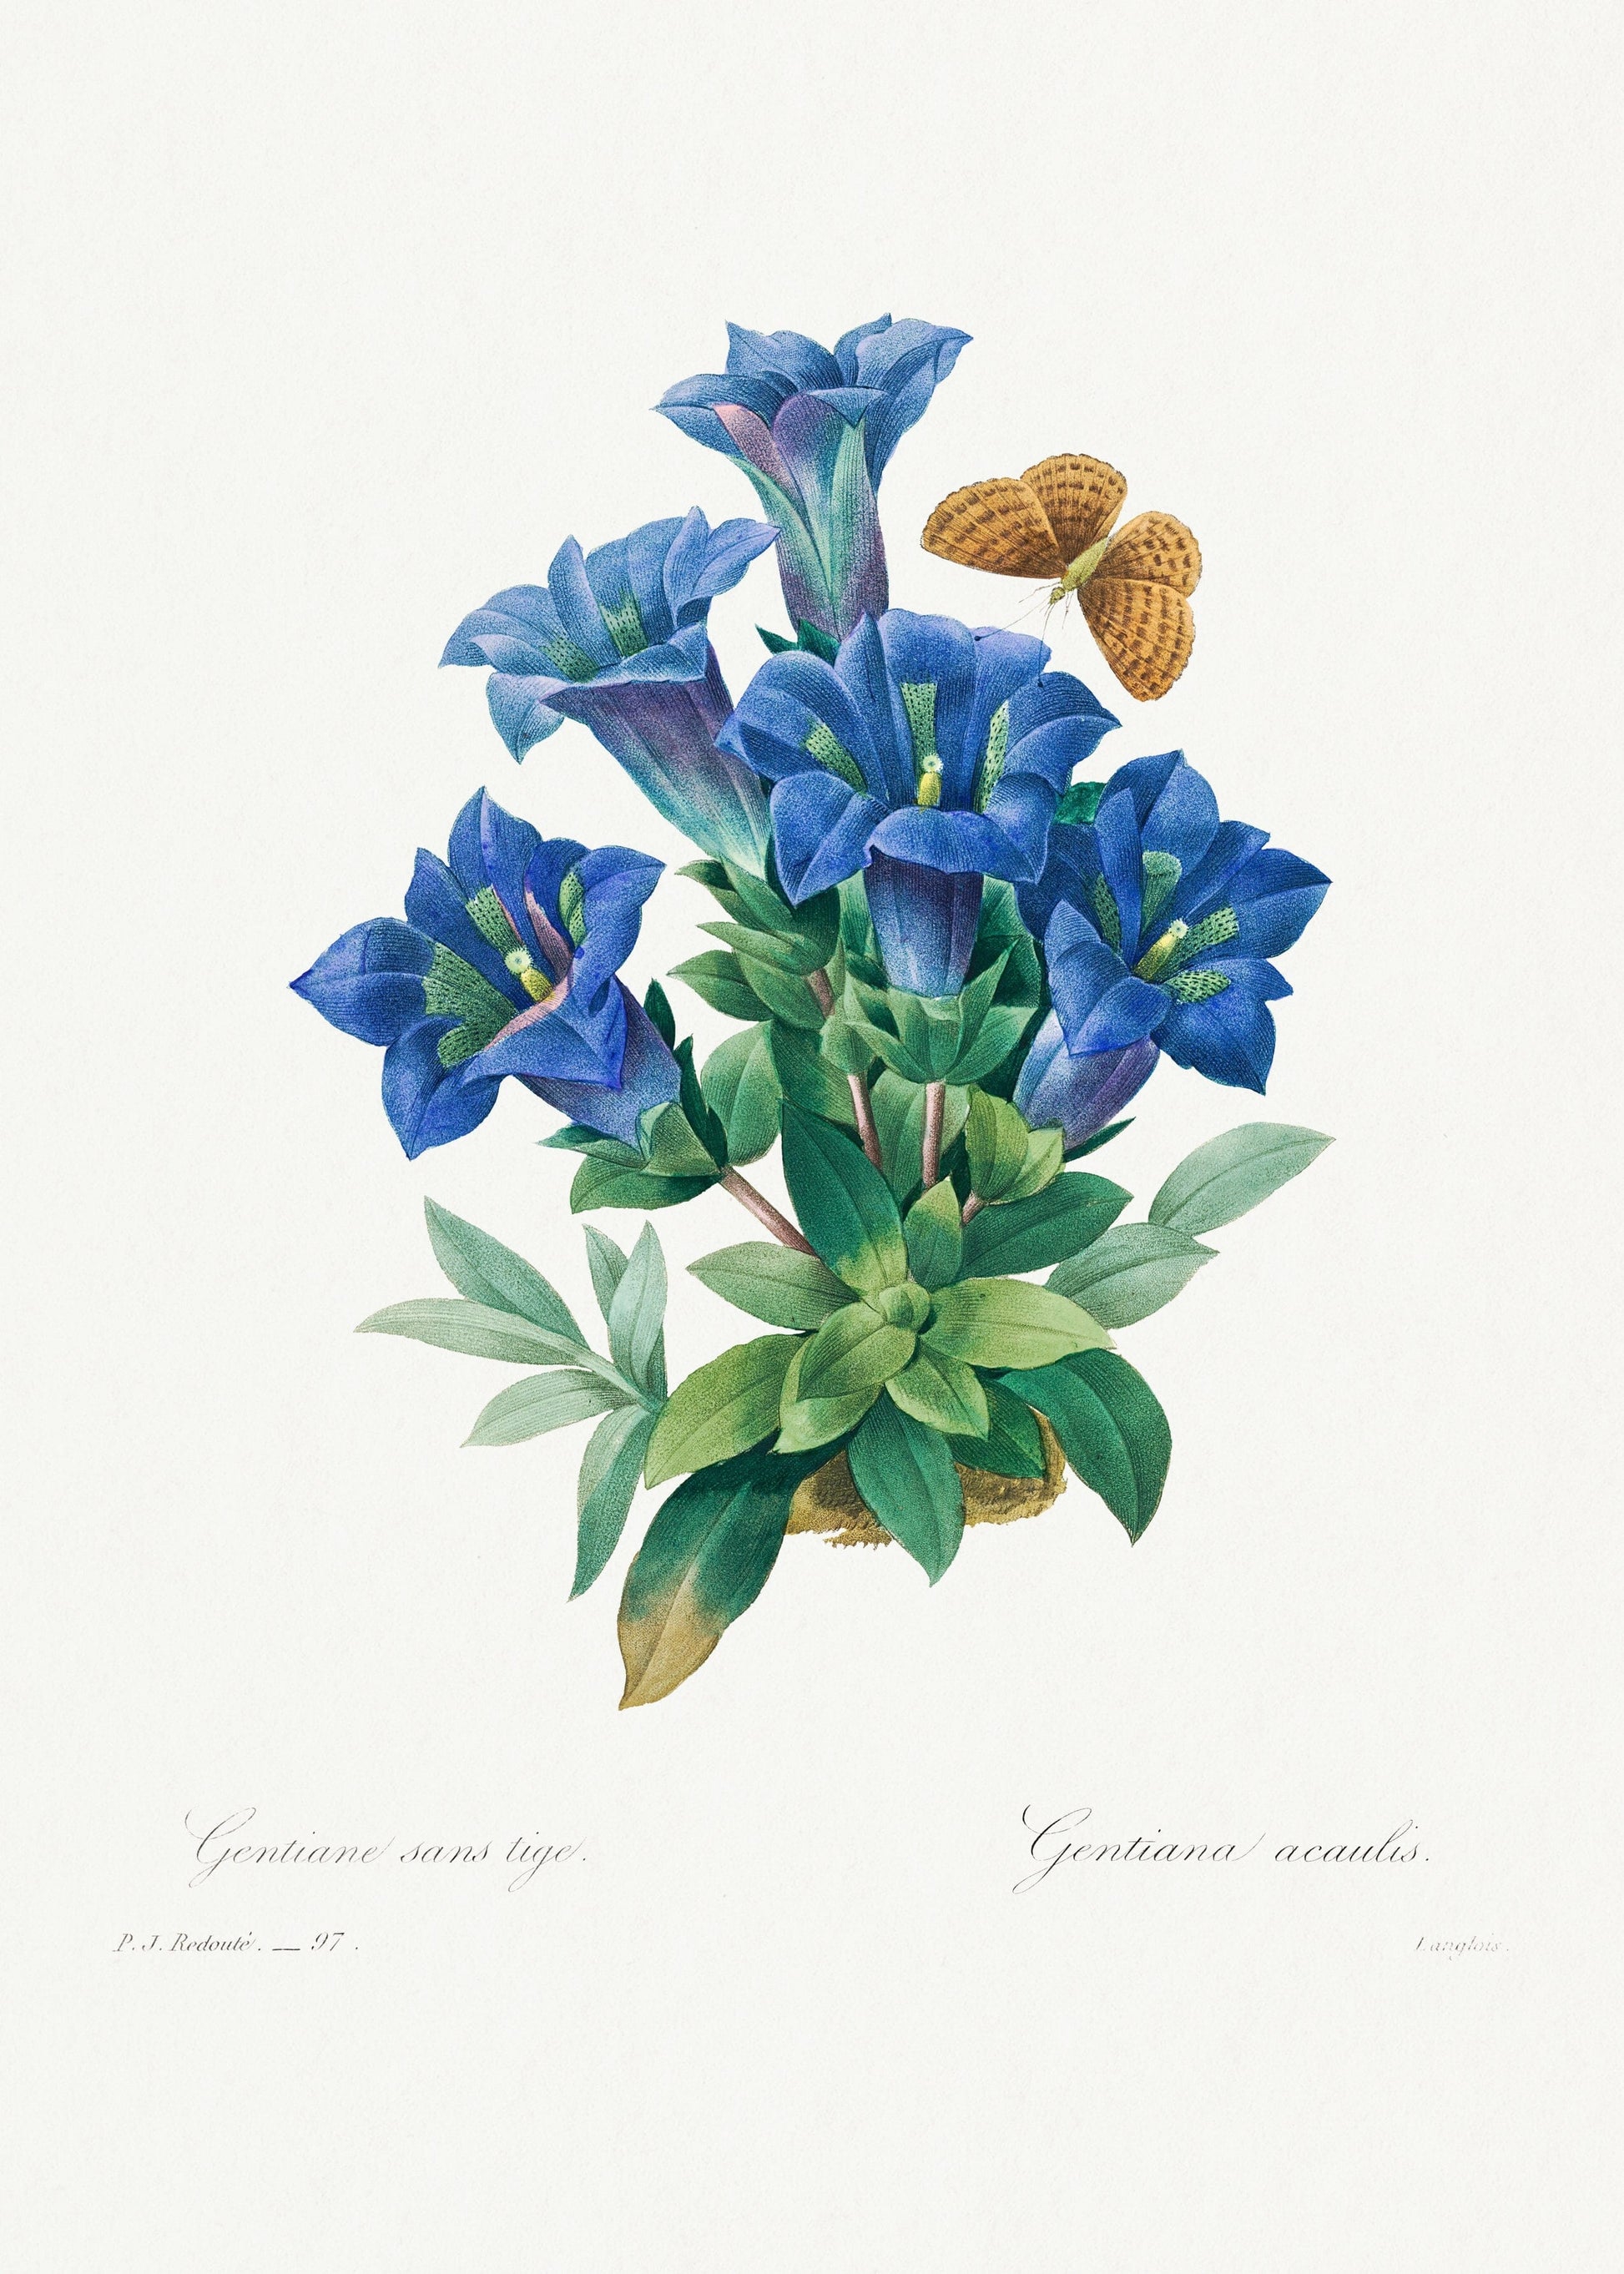 Gentiana Acaulis flower (1800s) | Vintage botanical prints | Pierre-Joseph Redouté Posters, Prints, & Visual Artwork The Trumpet Shop Vintage Prints   